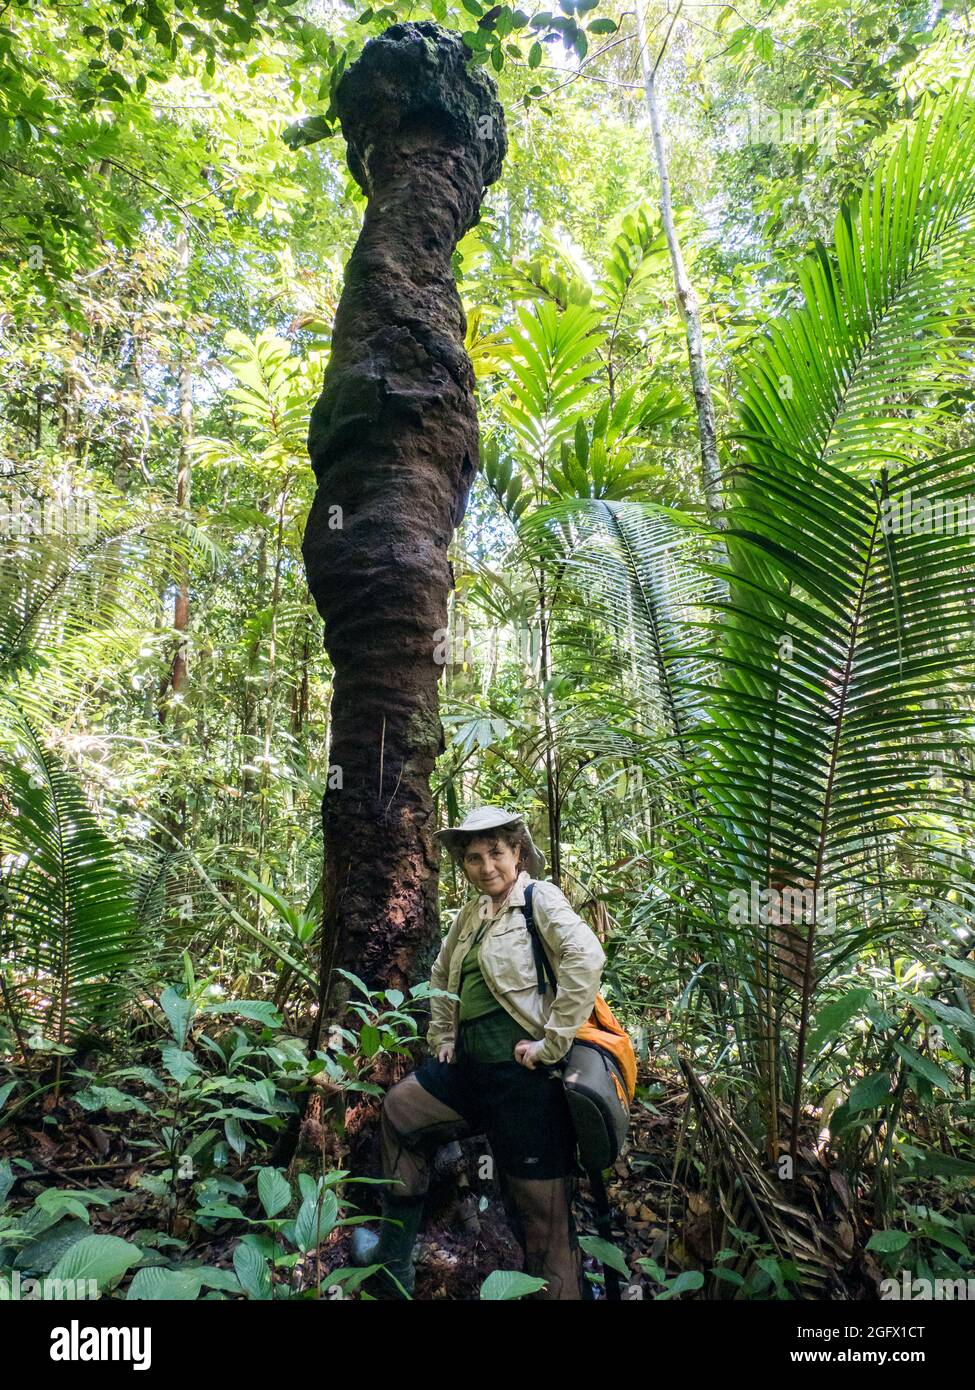 Femme caucasienne à côté d'un énorme termite dans la forêt amazonienne. Amazonie, Brésil, Amérique du Sud. Banque D'Images